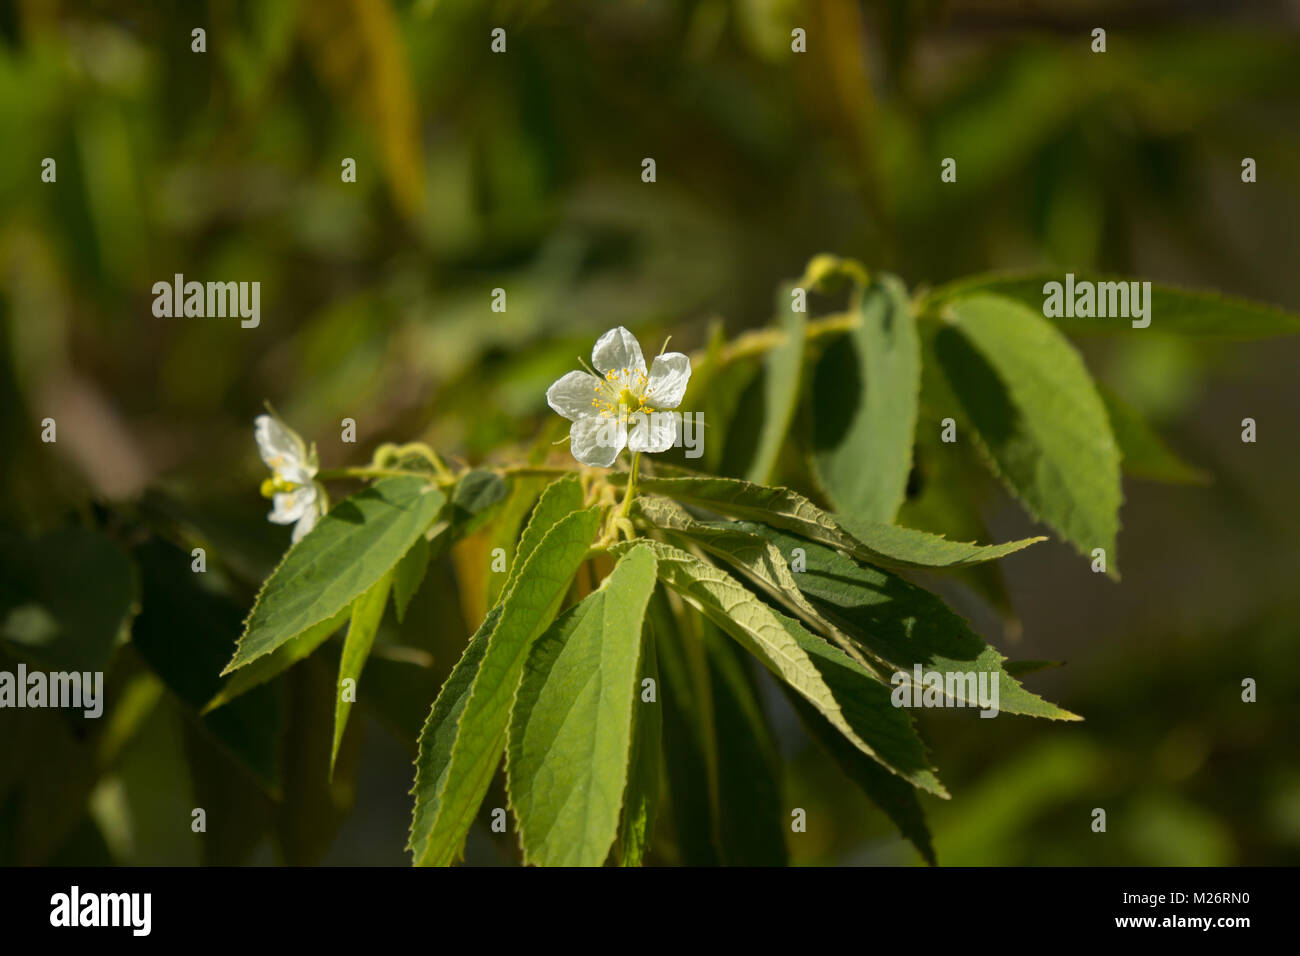 White Flower of West Indian Cherry or Calabura, Jam tree, Jamaican cherry, Malayan Cherry Stock Photo